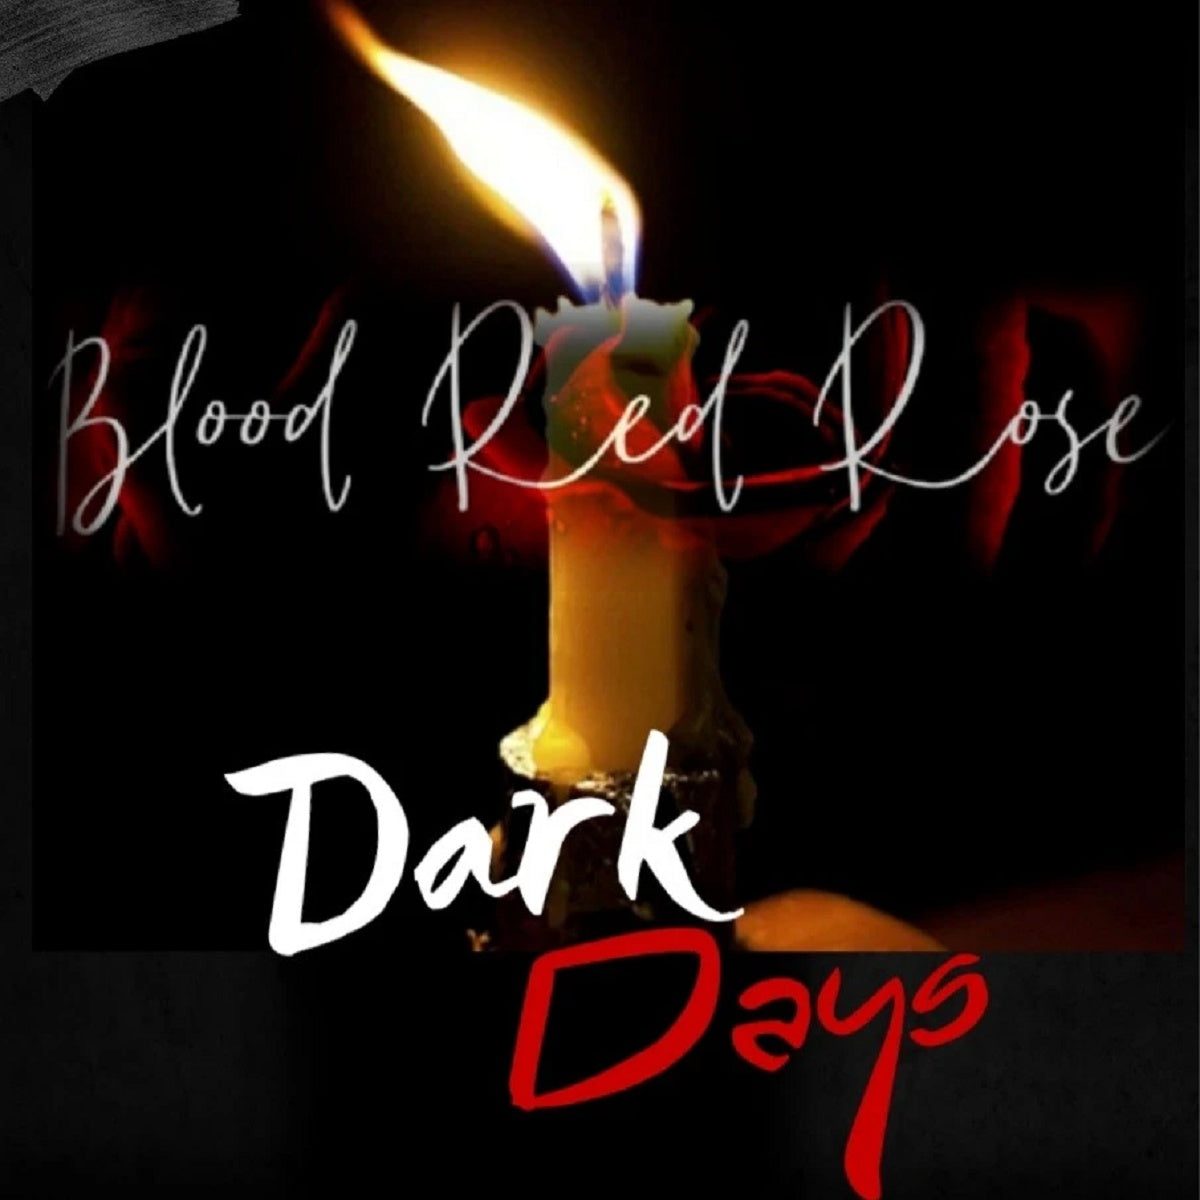 Blood Red Rose – ‘Dark Days’